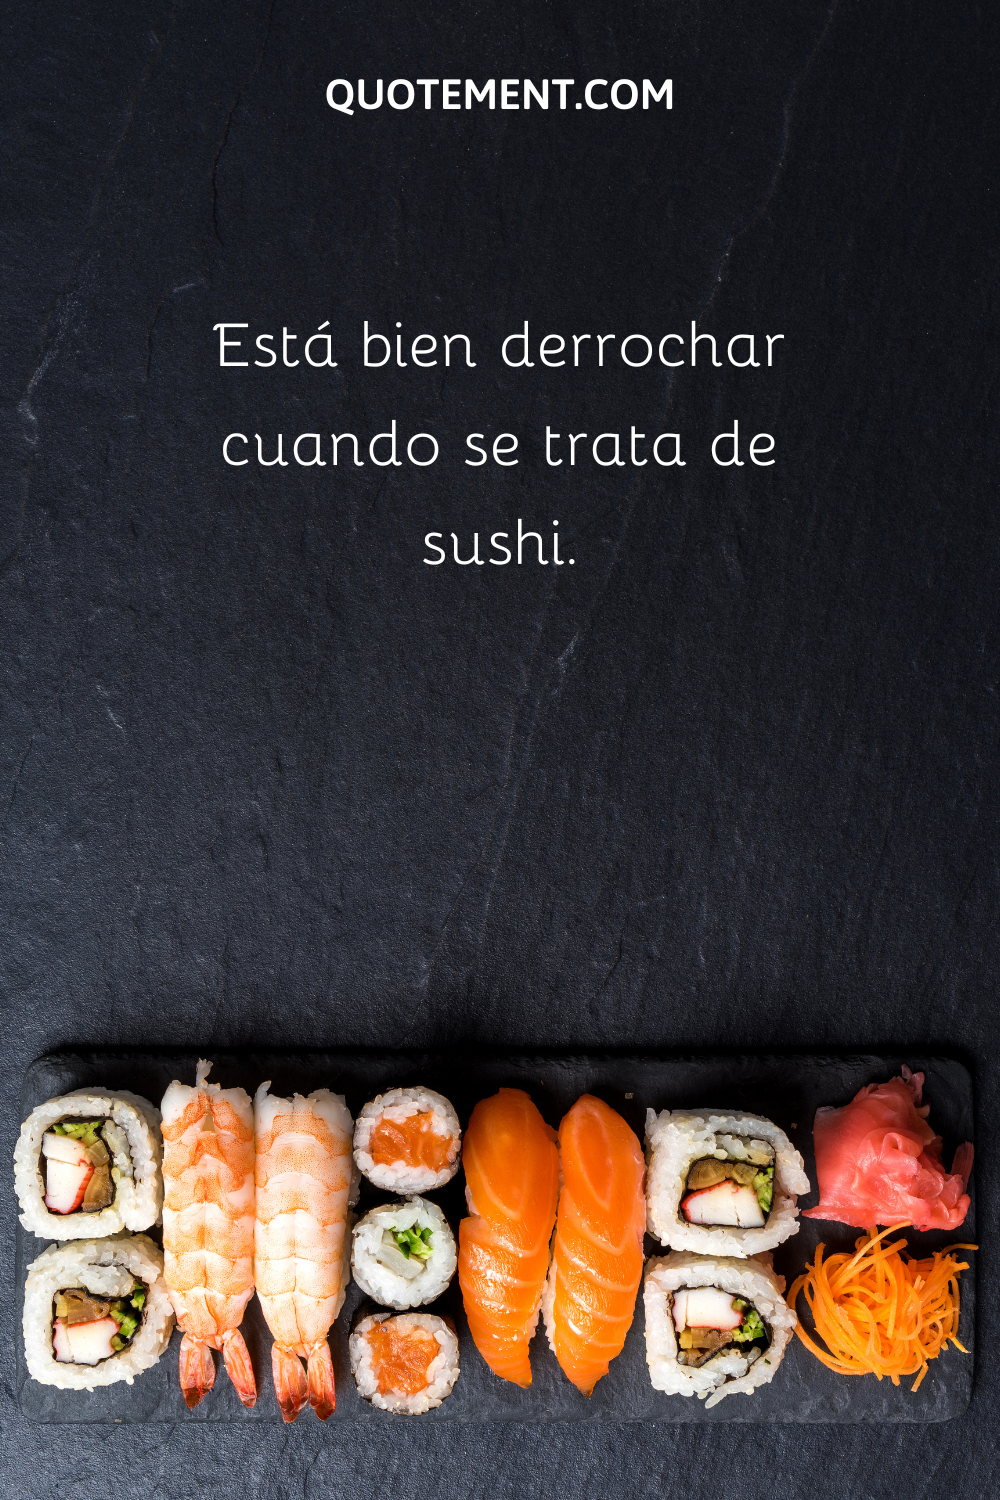 Cuando se trata de sushi, está bien darse un capricho.